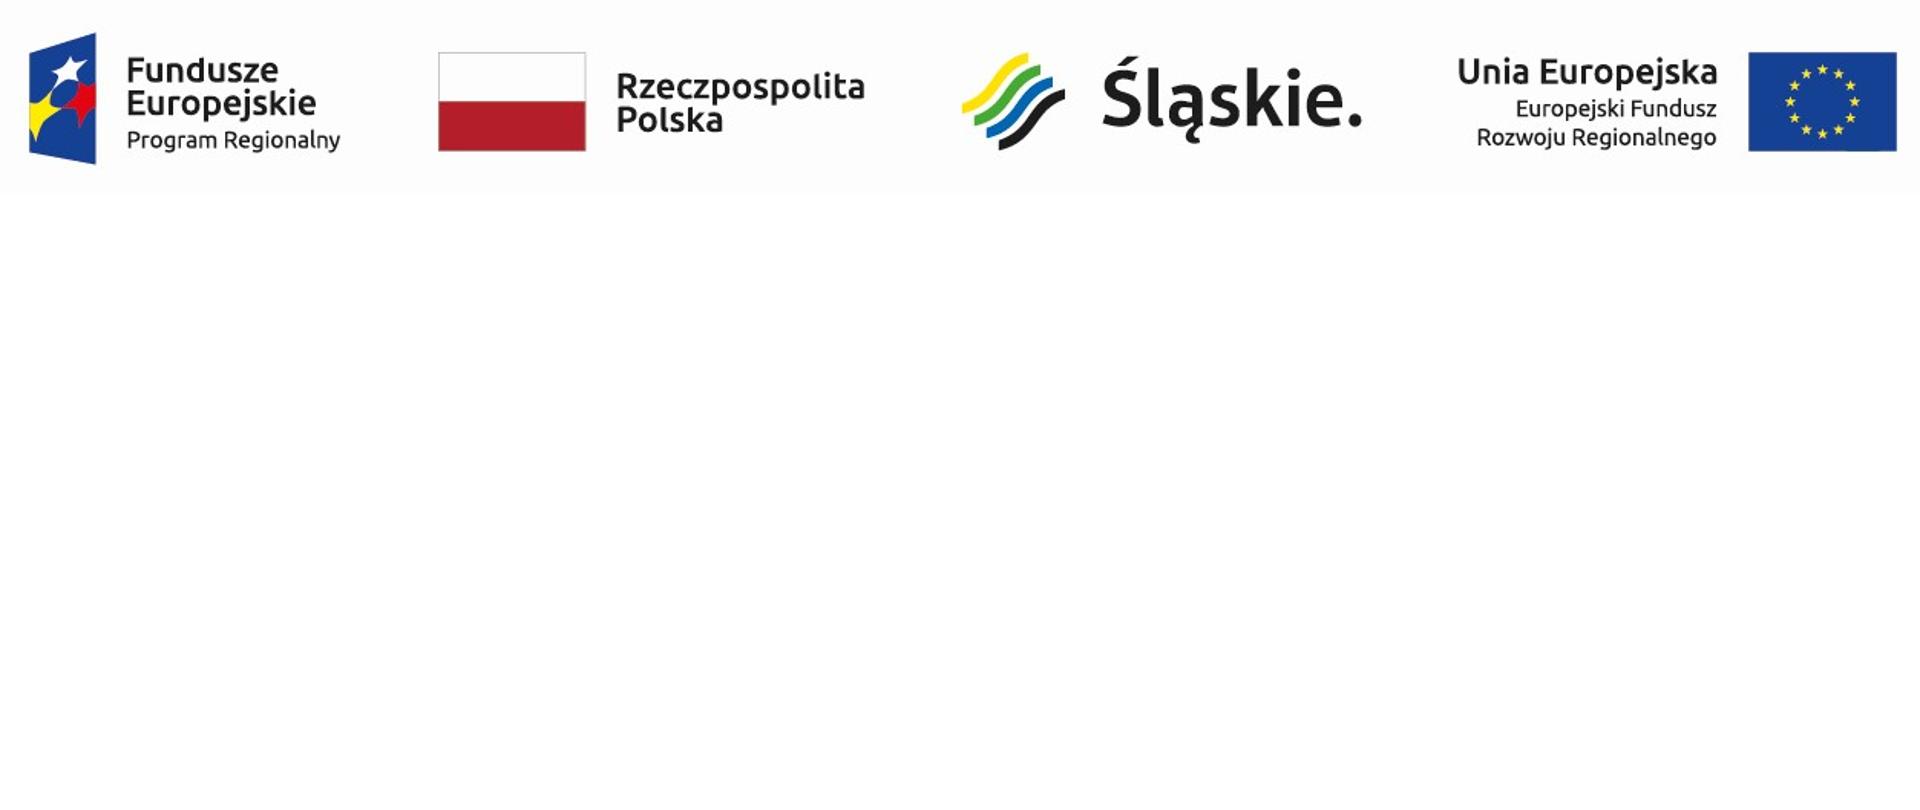 Od lewej krawędzi do prawej w poziomie loga: Fundusze Europejskie Program Regionalny, Rzeczpospolita Polska, Śląskie, Unia Europejska Europejski Fundusz Rozwoju Regionalnego